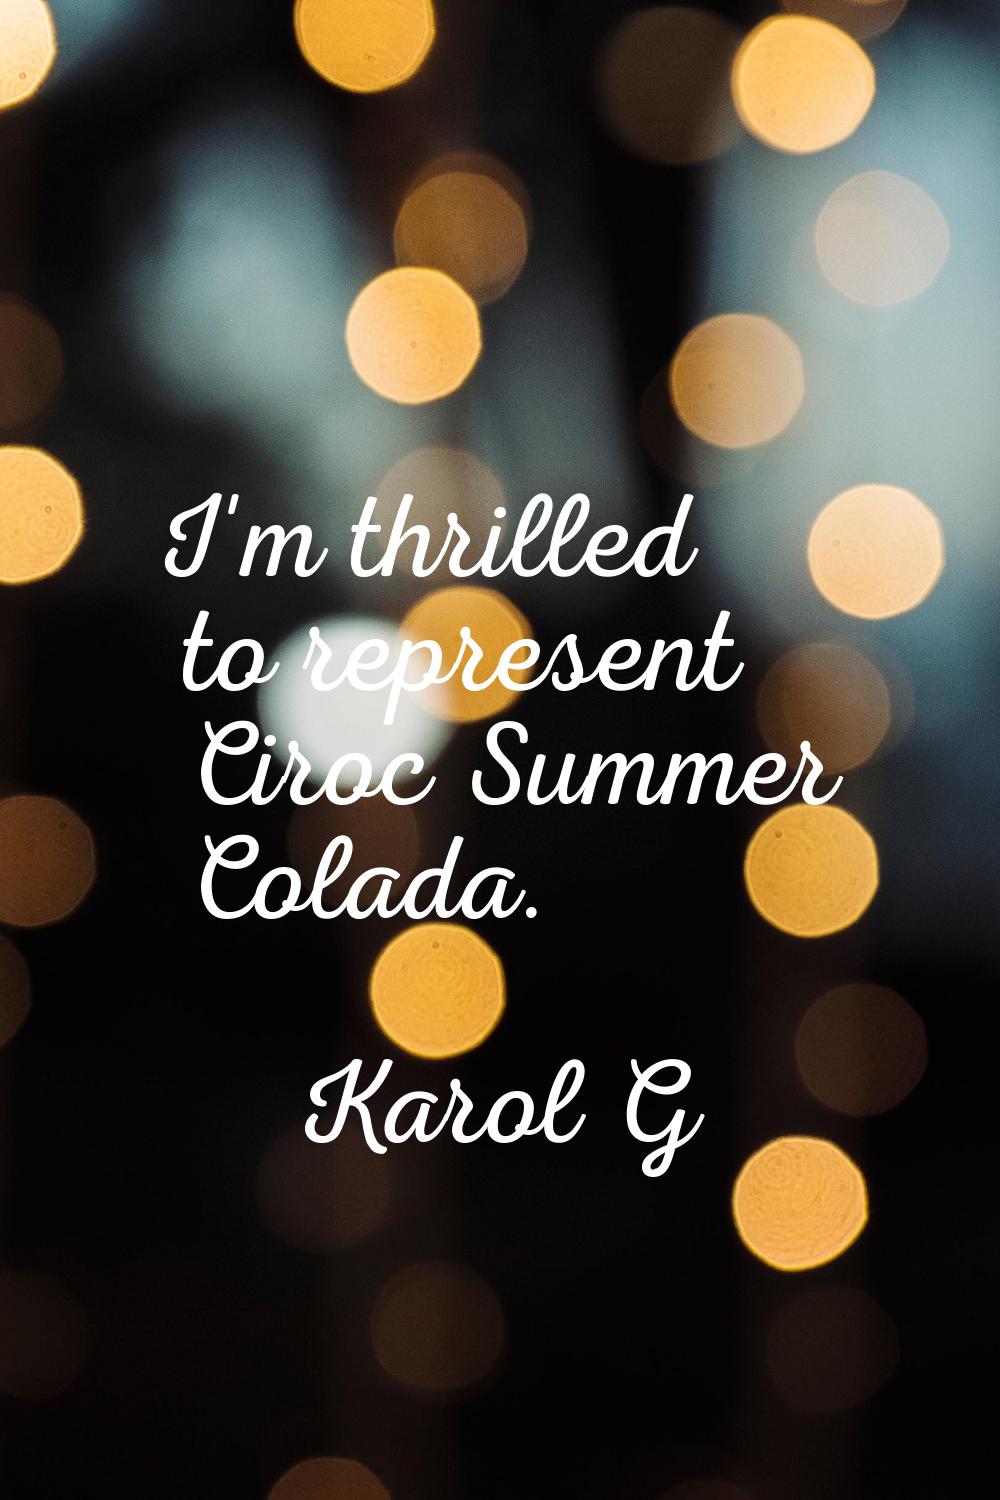 I'm thrilled to represent Ciroc Summer Colada.